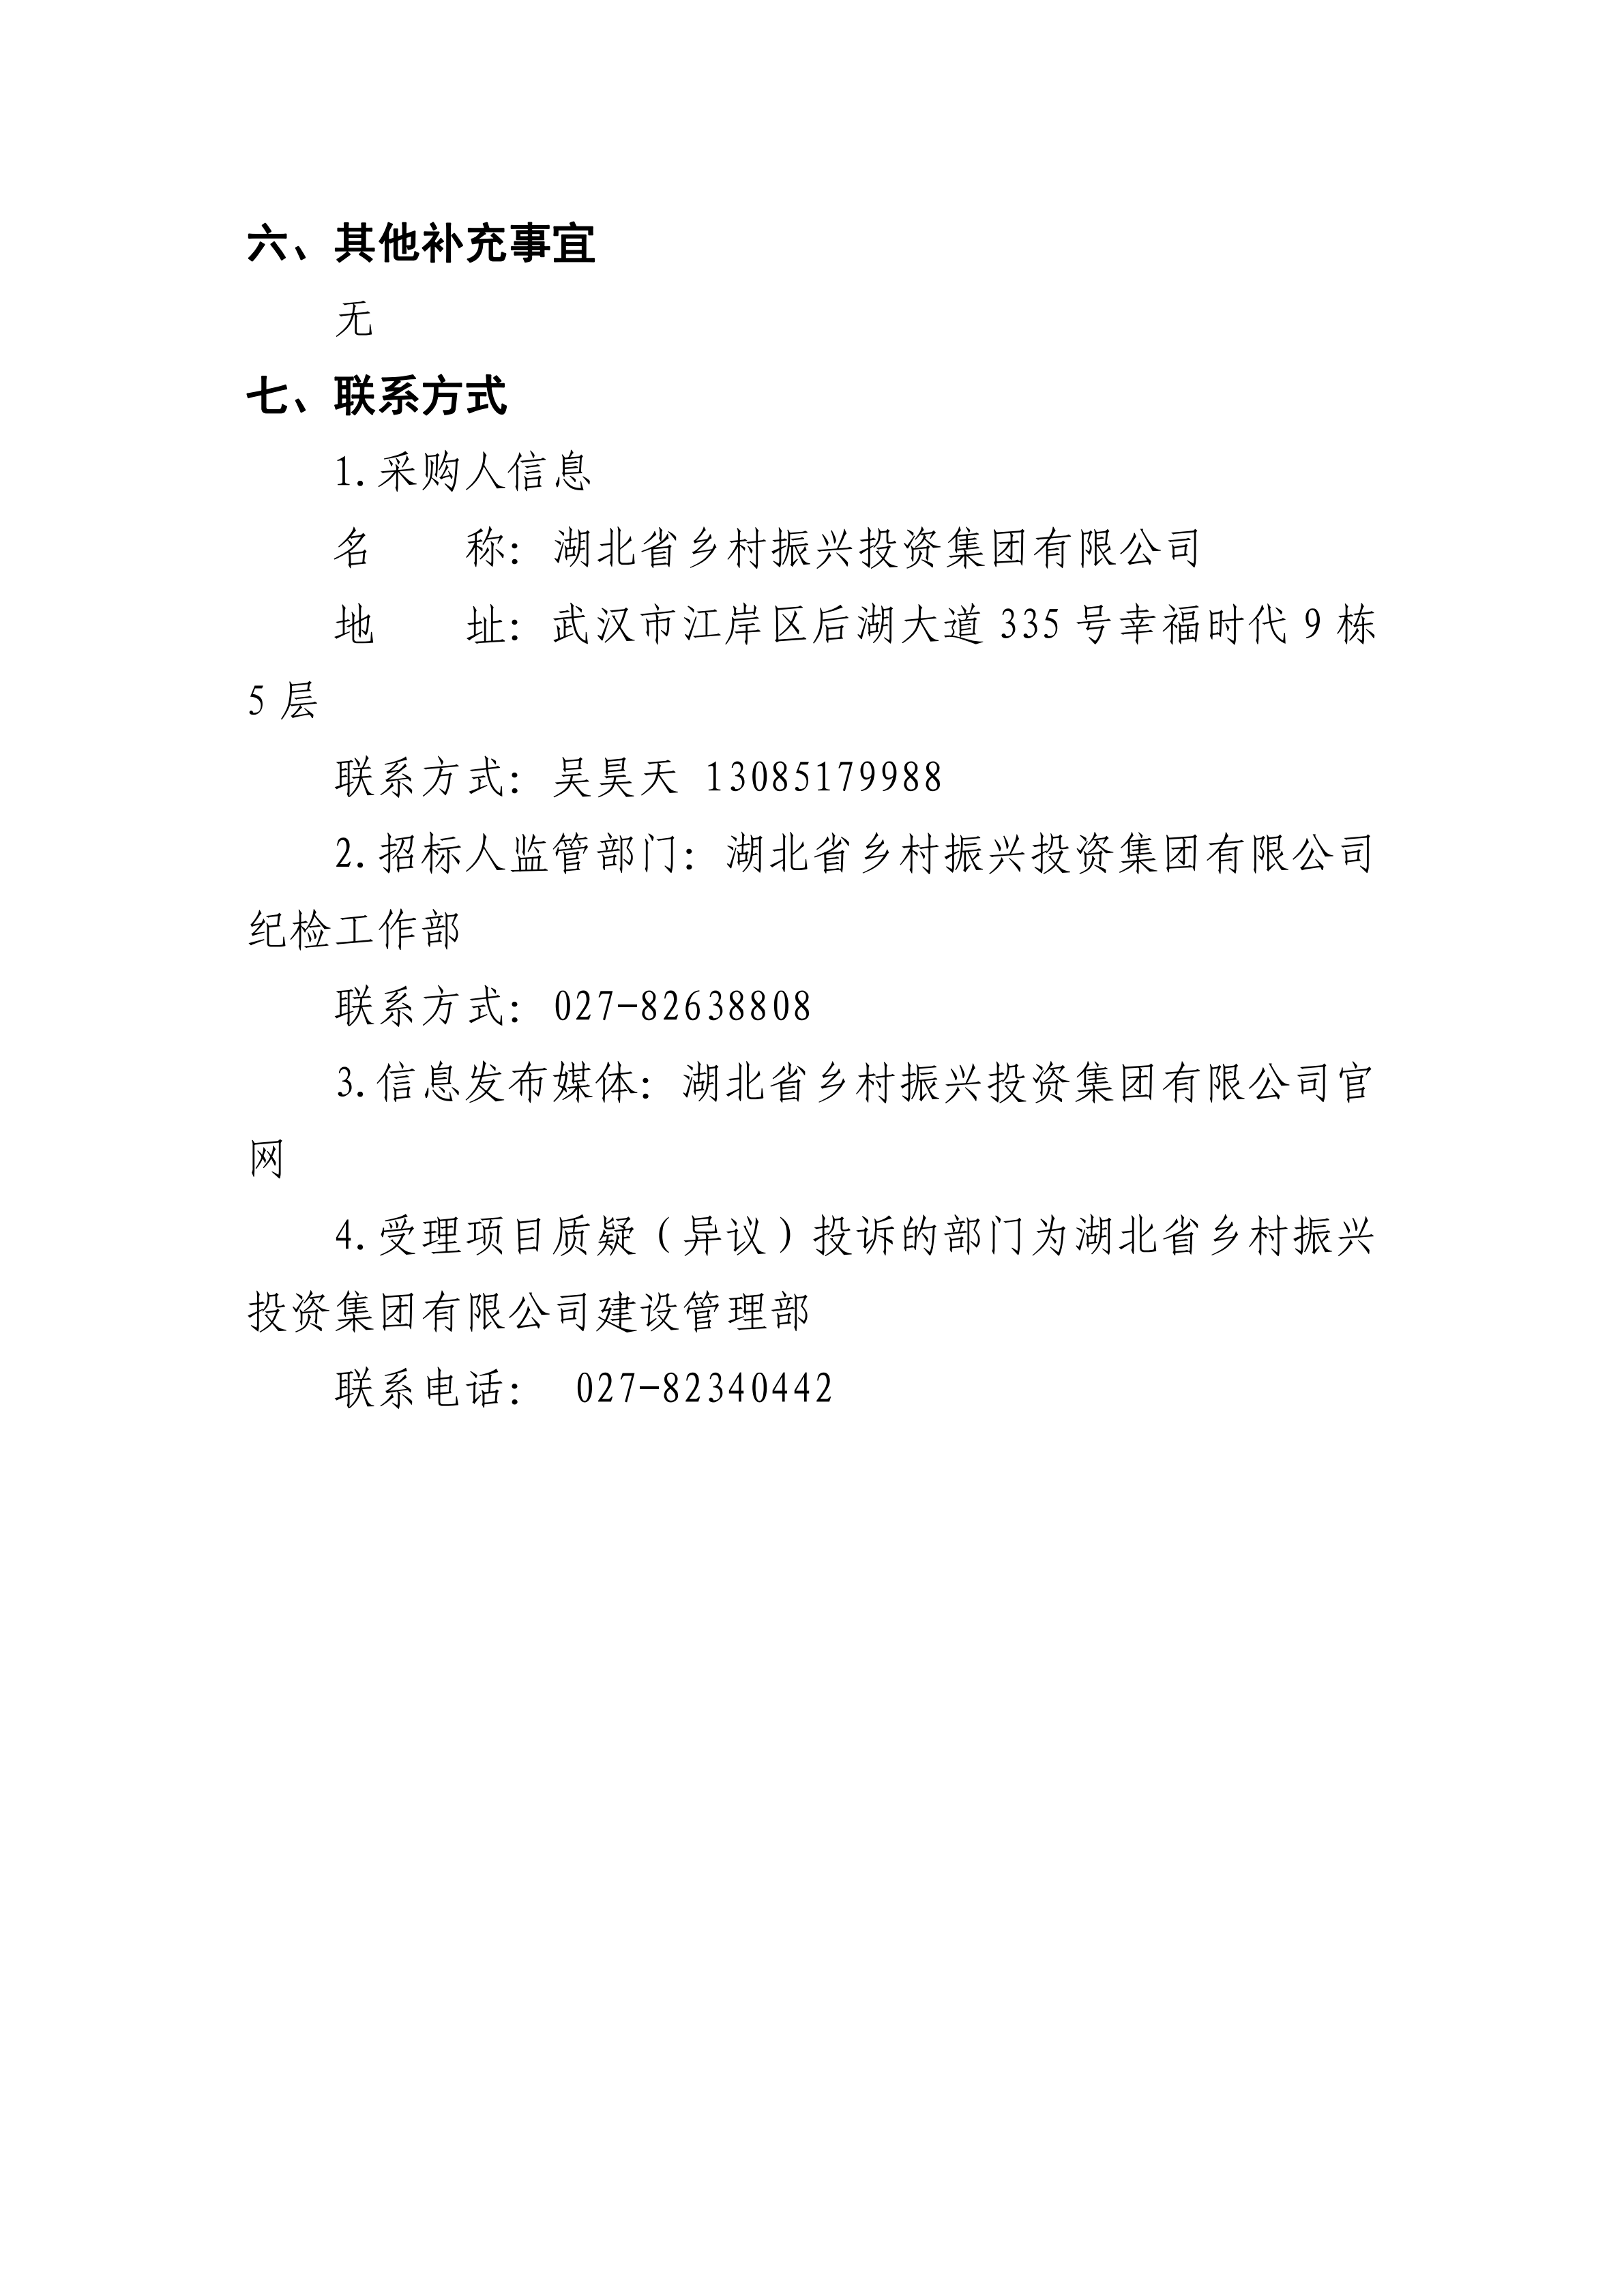 手机买球官网(中国)科技有限公司建设工程安全咨询服务项目竞争性谈判公告(0719)_03.png